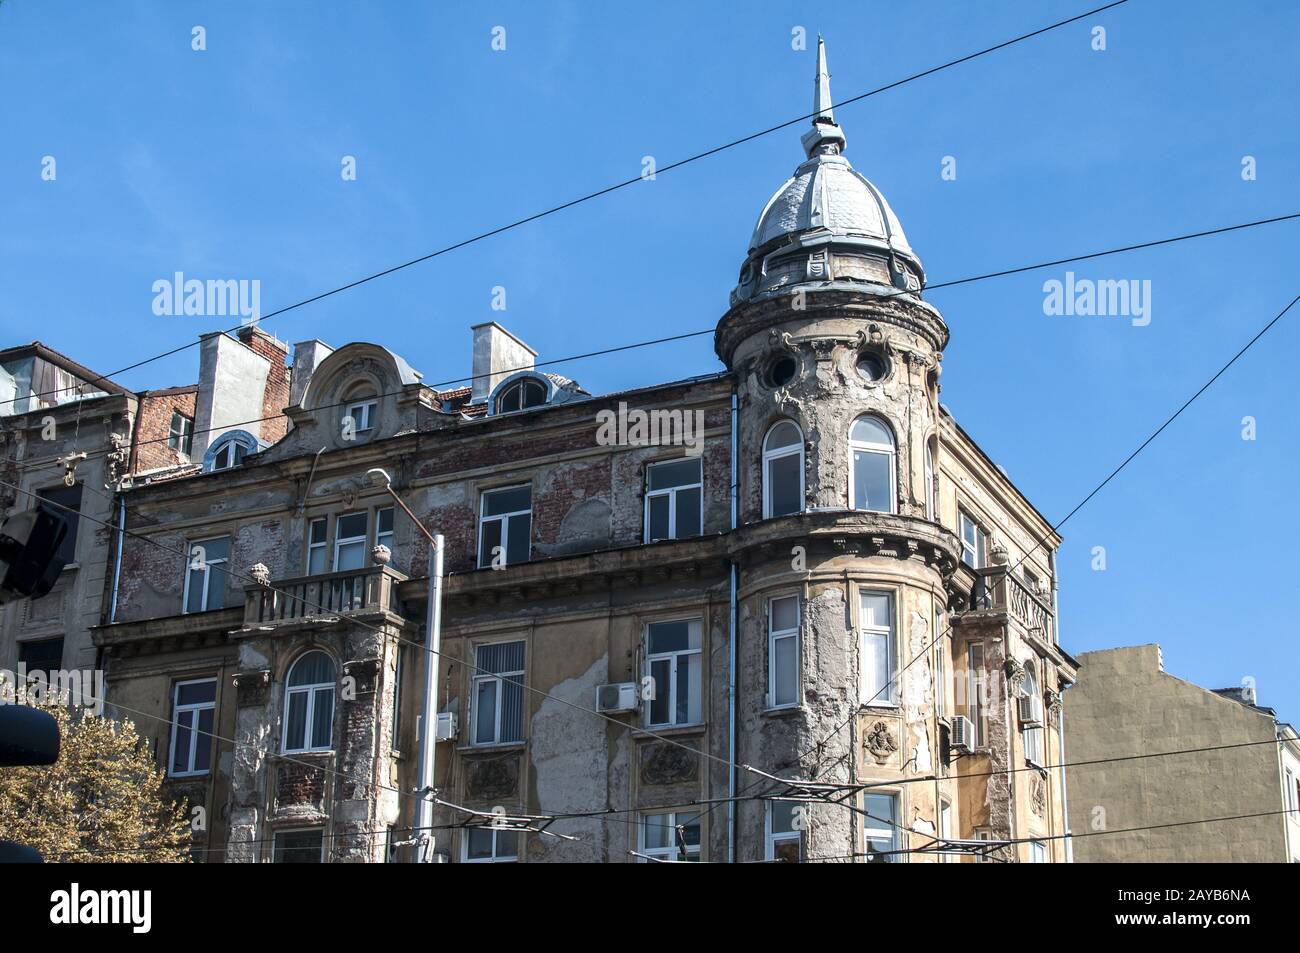 Alten retro vernachlässigt schöne Stadt Haus Gebäude am klaren, blauen Himmel Hintergrund Stockfoto